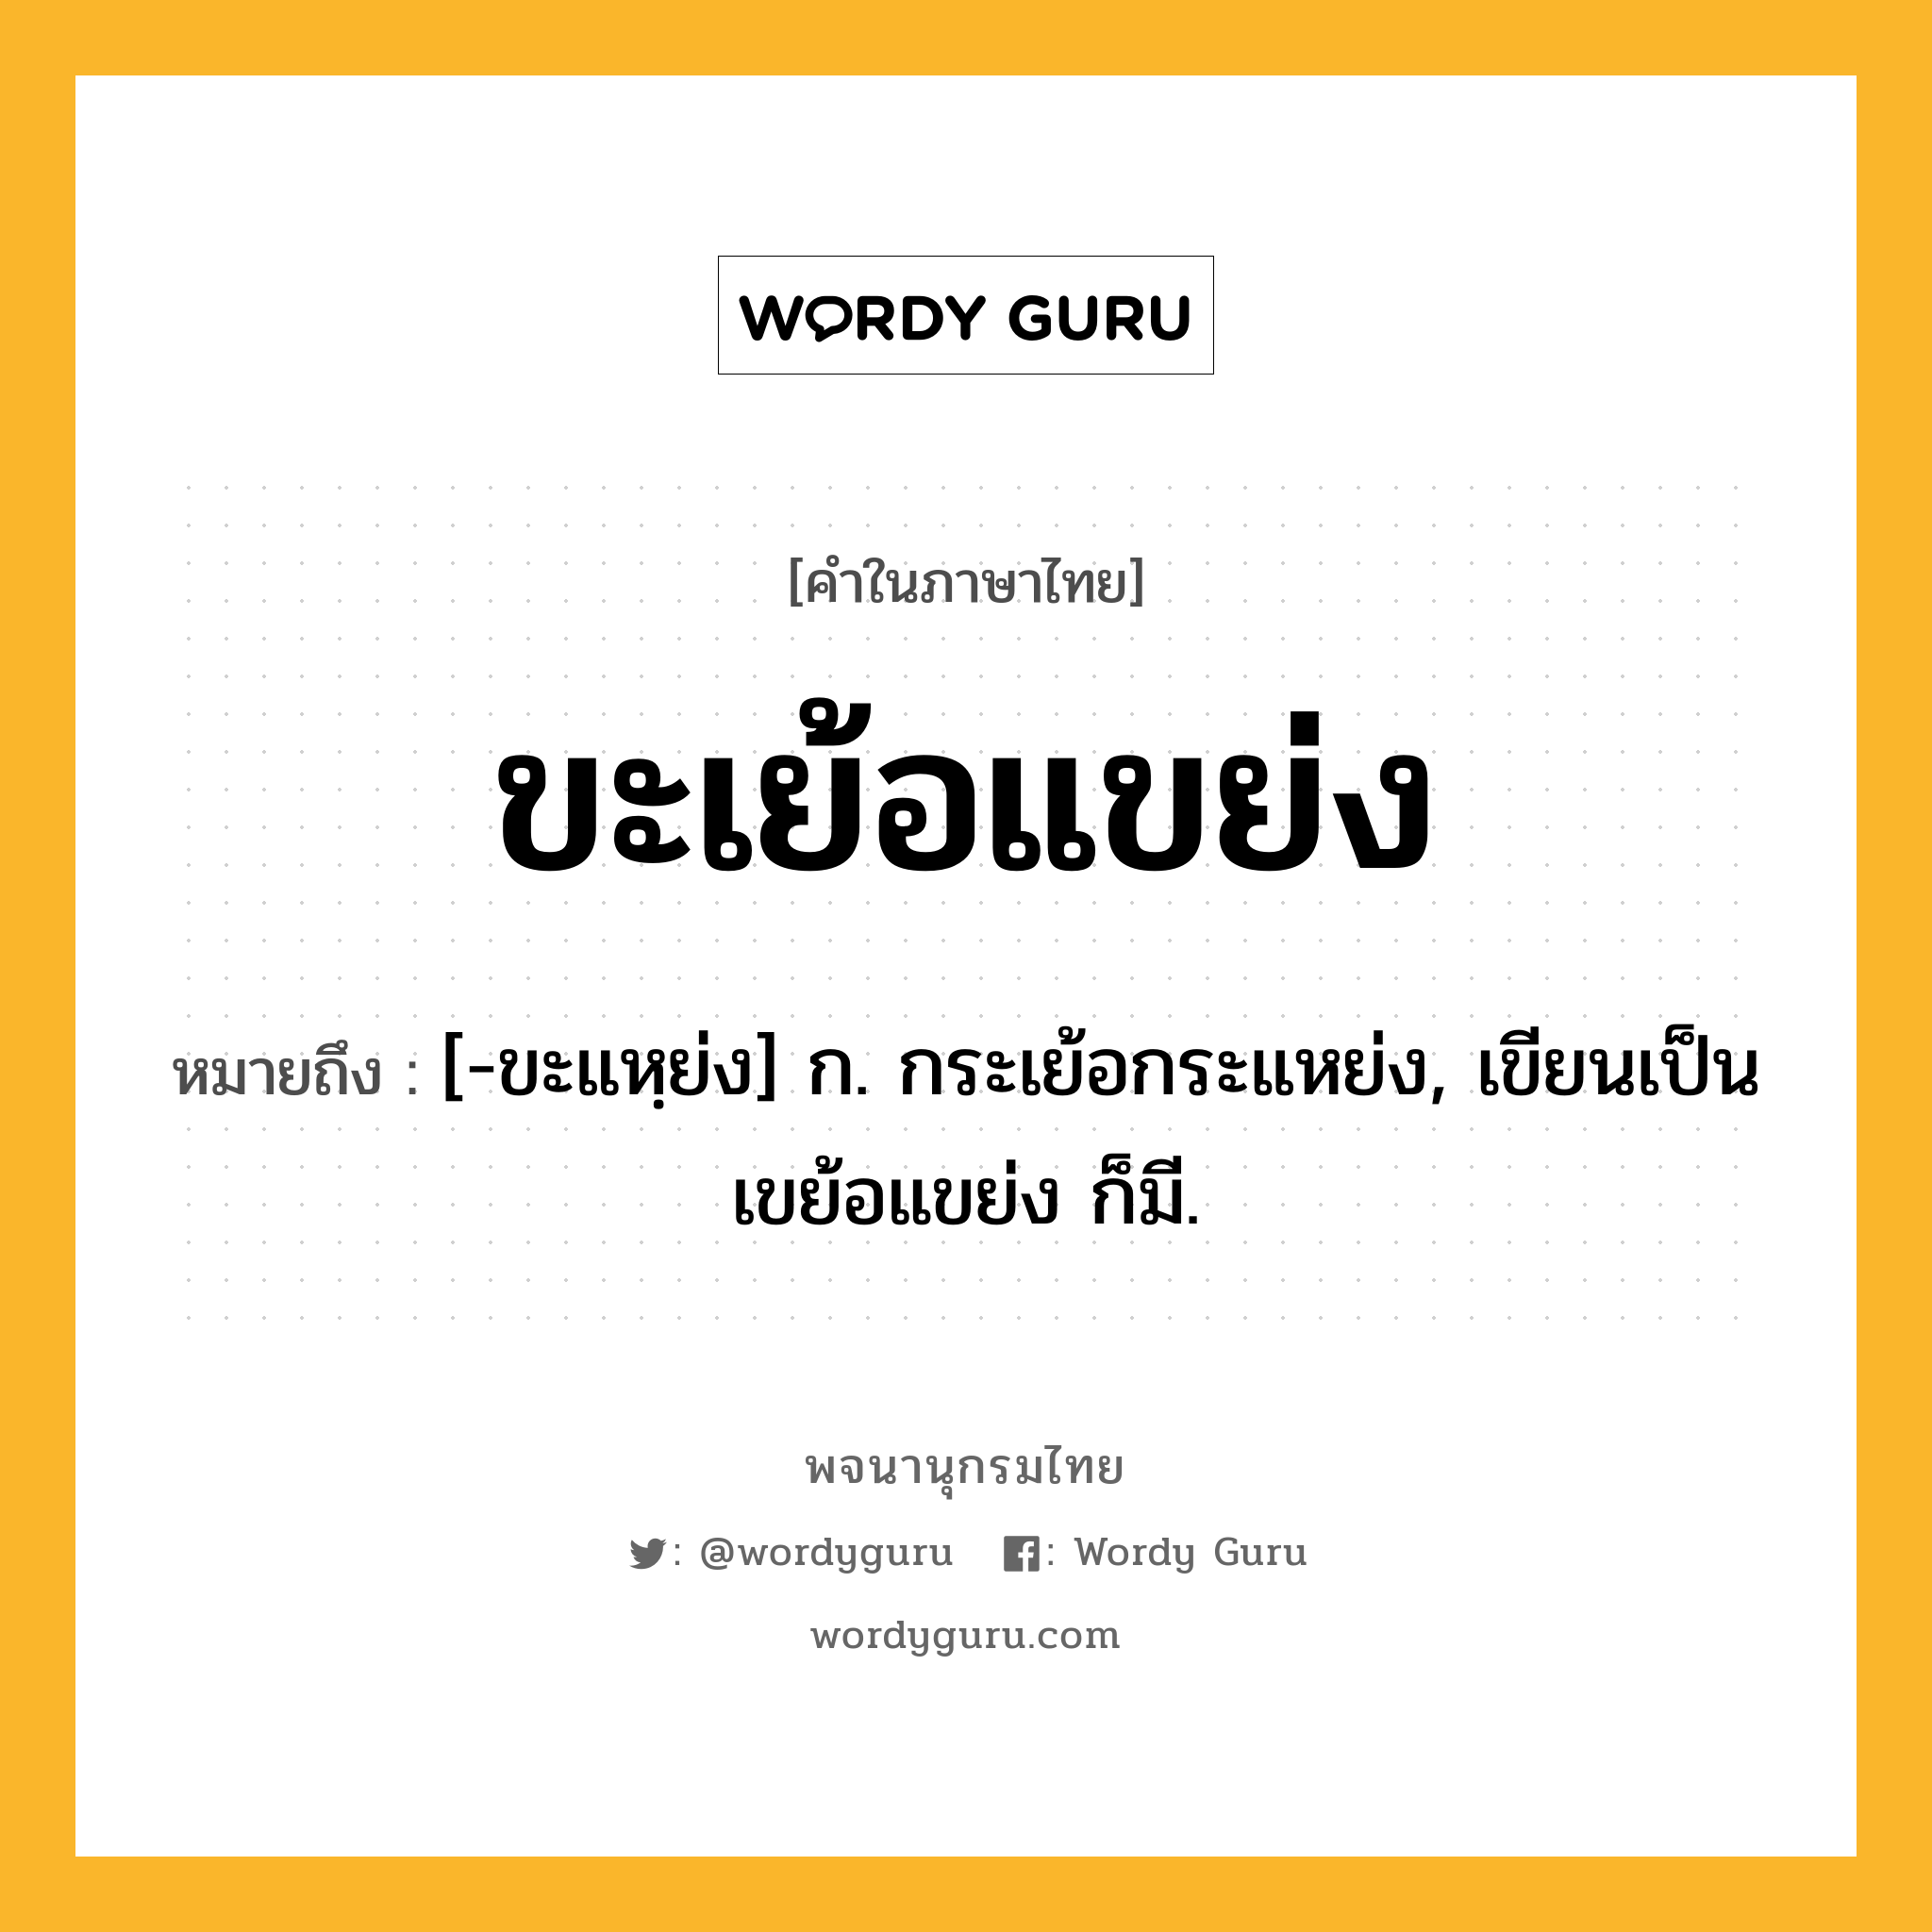 ขะเย้อแขย่ง หมายถึงอะไร?, คำในภาษาไทย ขะเย้อแขย่ง หมายถึง [-ขะแหฺย่ง] ก. กระเย้อกระแหย่ง, เขียนเป็น เขย้อแขย่ง ก็มี.